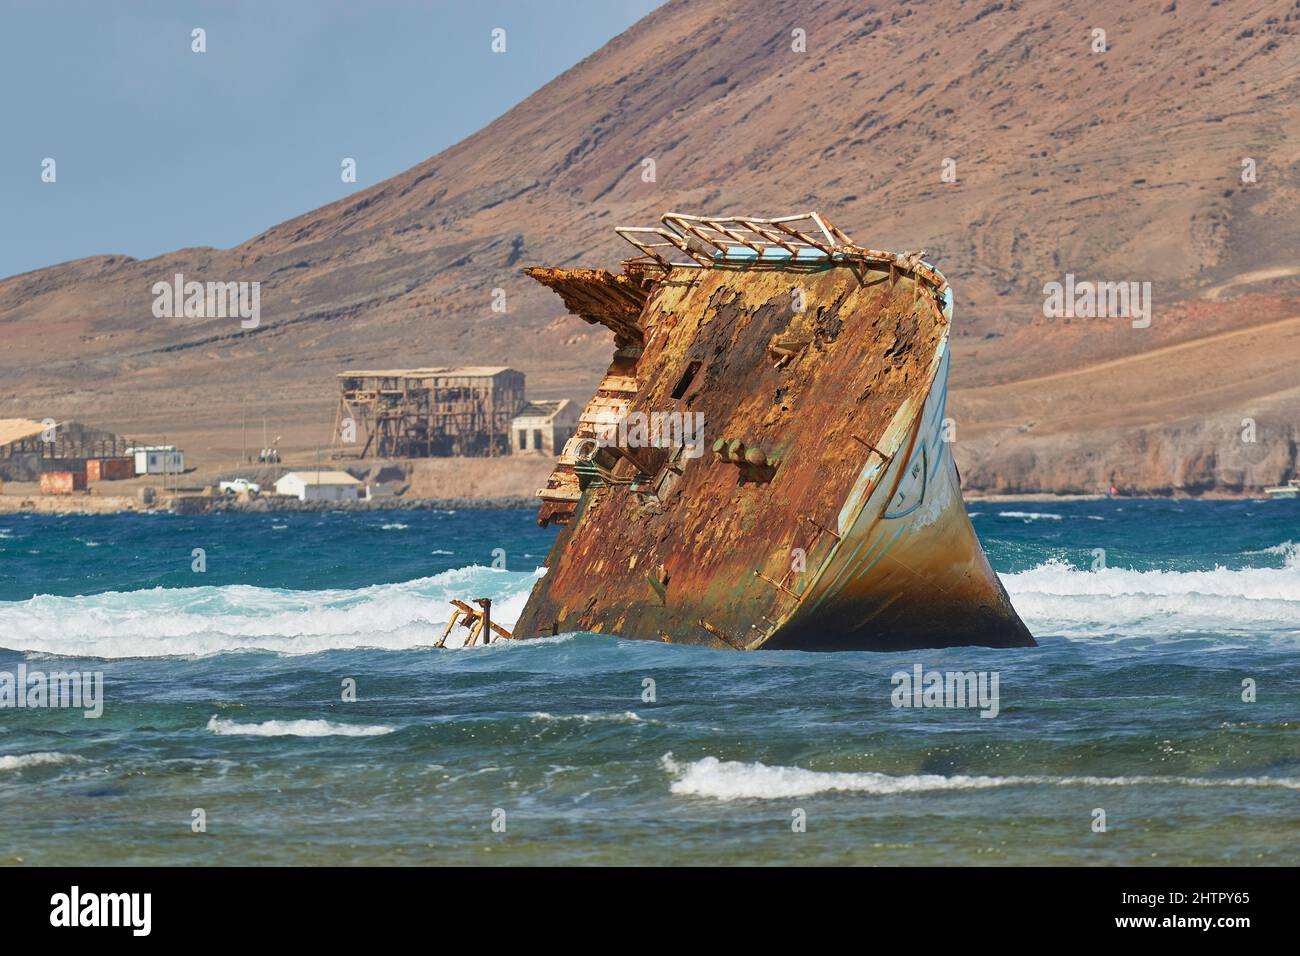 Un naufrage à Baia de Parda, sur la côte est de l'île de Sal, Cap-Vert, Afrique de l'Ouest. Banque D'Images